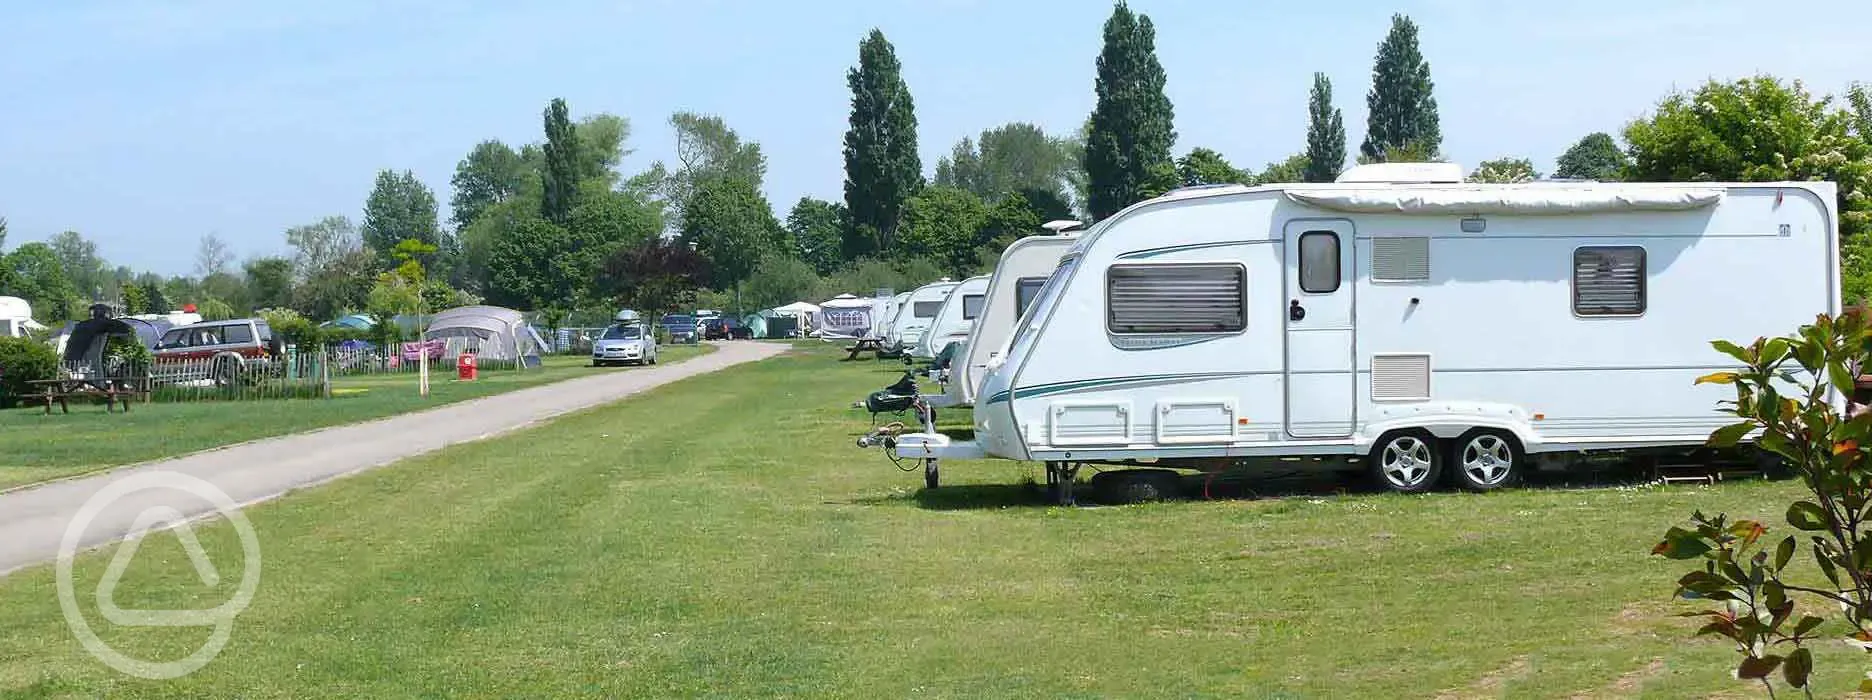 Caravan pitch at Sandwich Leisure Park